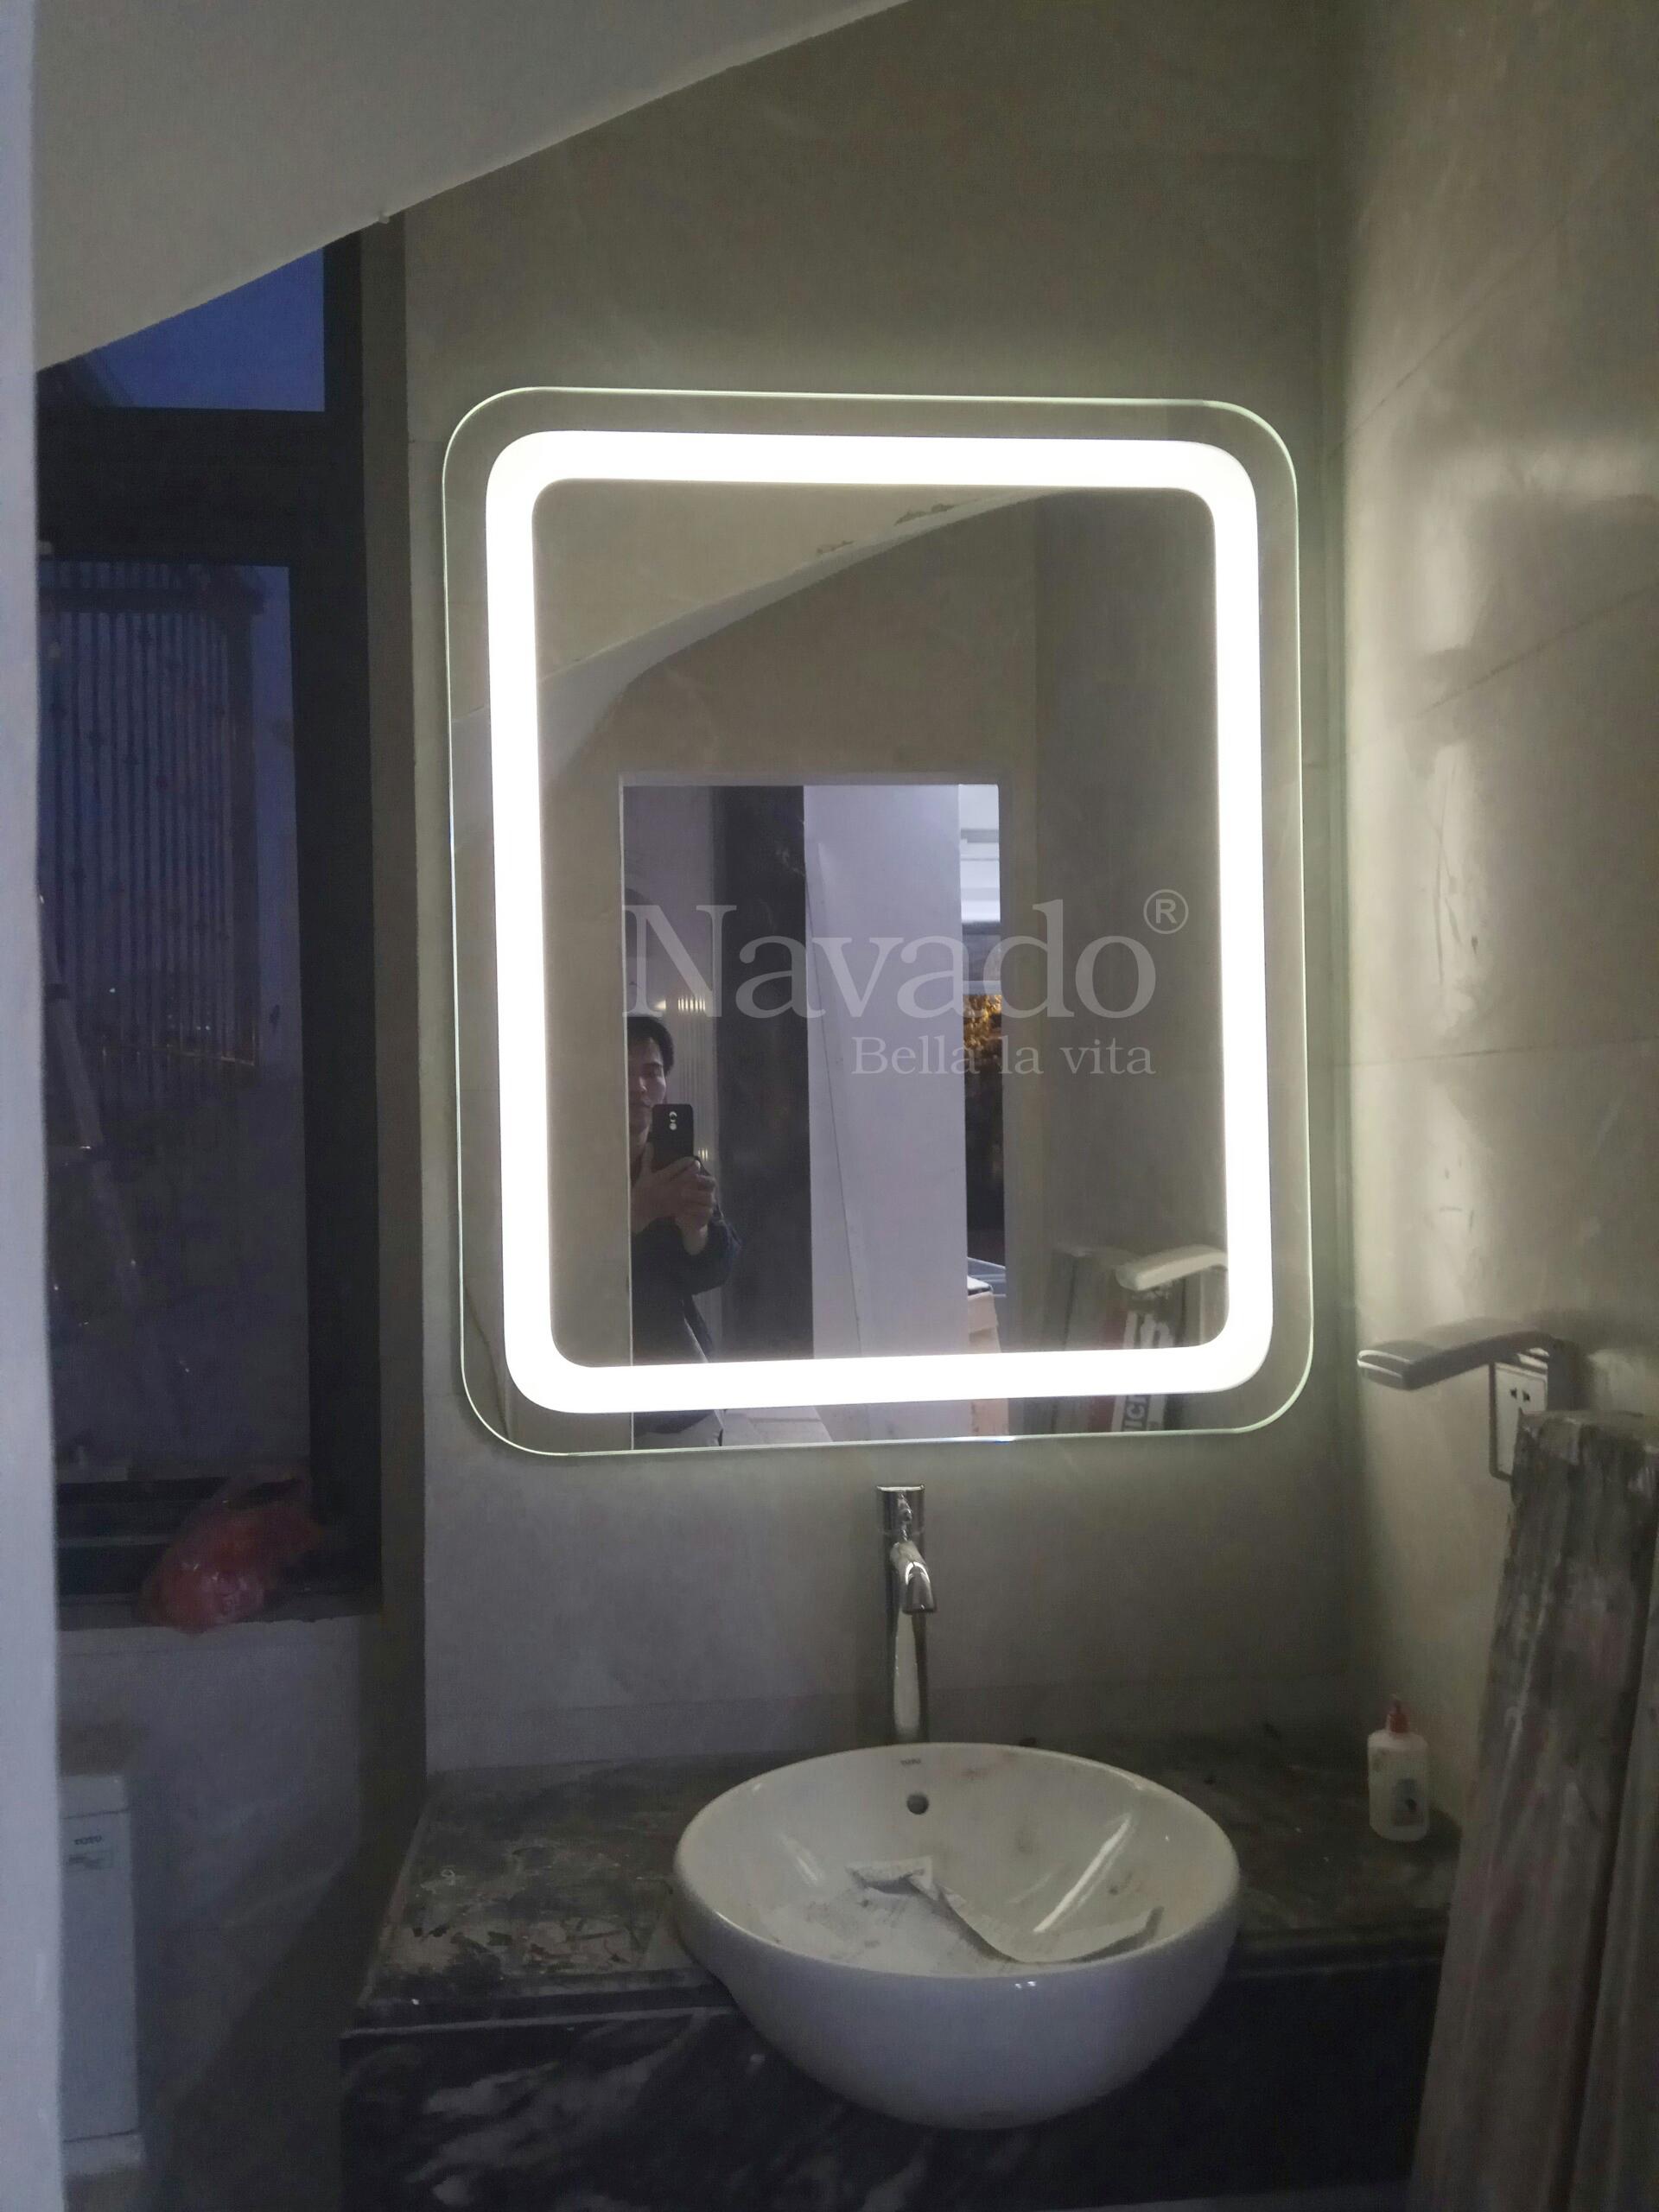 Gương đèn led hắt Navado không chỉ là sản phẩm trang trí trong phòng tắm mà còn được thiết kế để mang đến hiệu suất cao trong quá trình sử dụng. Với công nghệ tiên tiến, sản phẩm này sẽ mang đến cho người sử dụng một trải nghiệm tuyệt vời hơn bao giờ hết. Gương đèn led hắt Navado là lựa chọn hoàn hảo cho những ai yêu thích sự tiện dụng và gọn nhẹ.